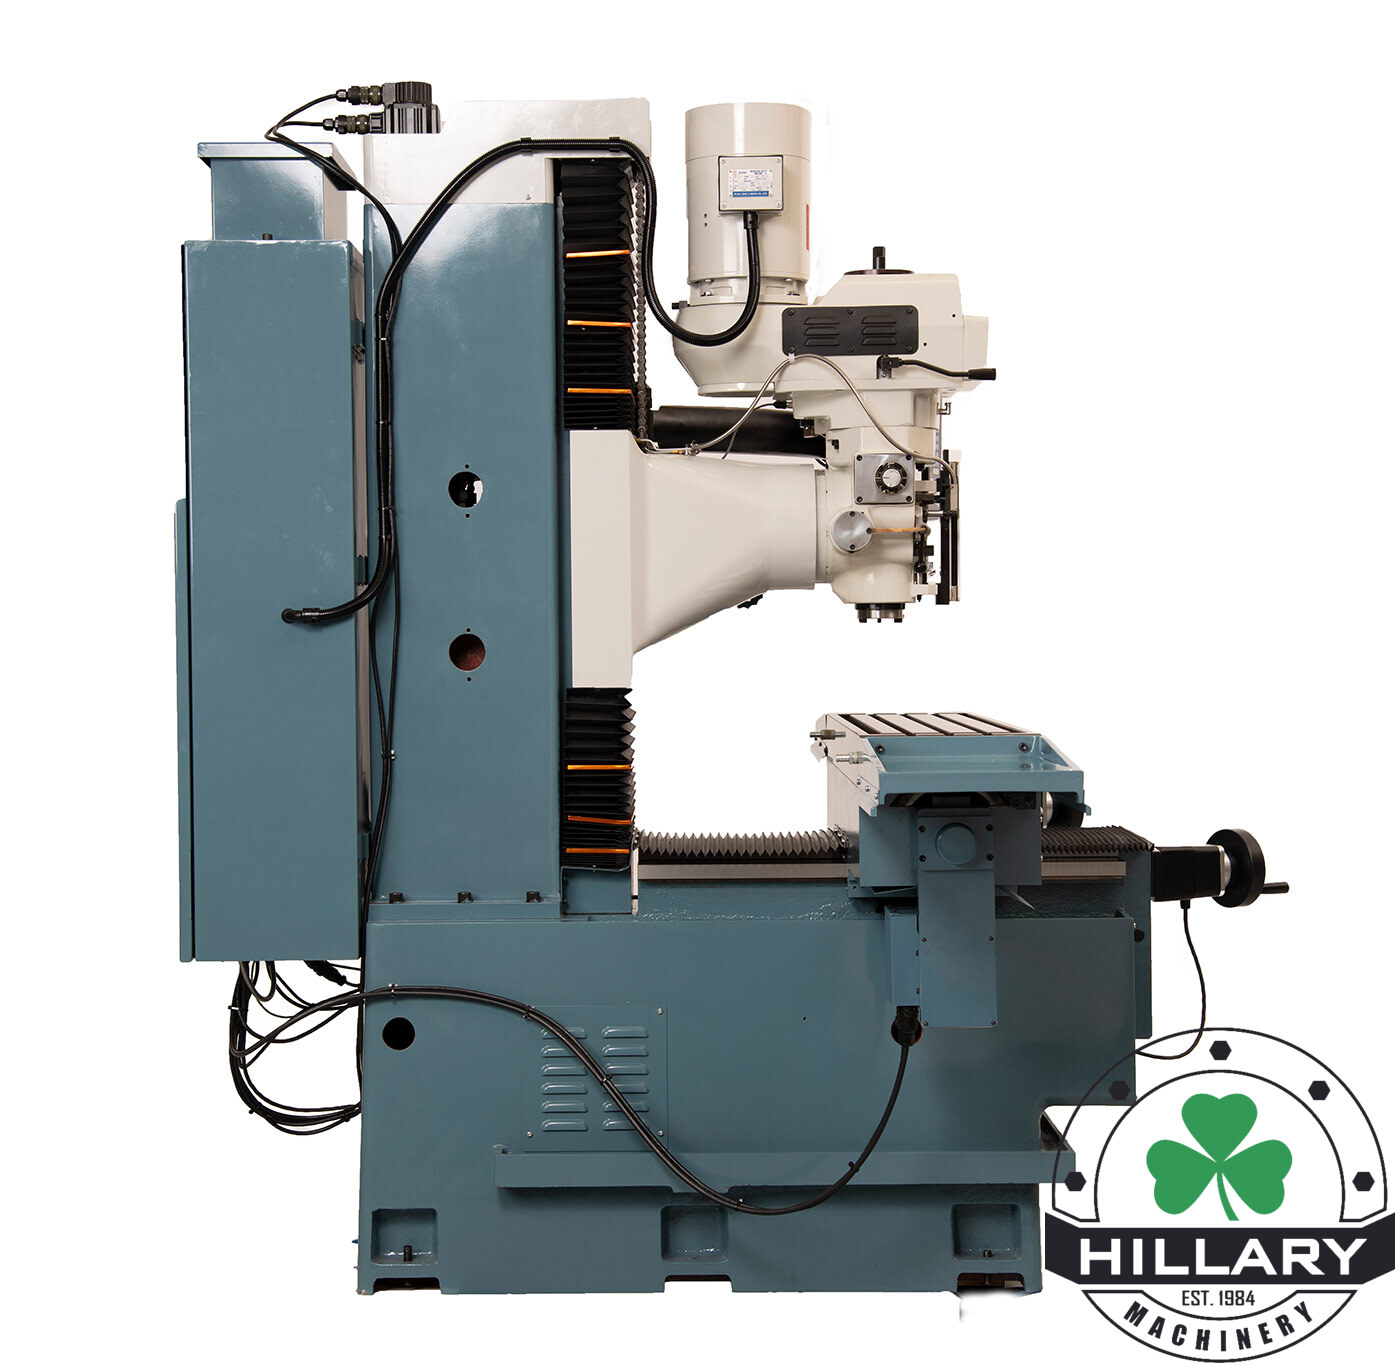 TRAK MACHINE TOOLS TRAK DPM RX5 Tool Room Mills | Hillary Machinery